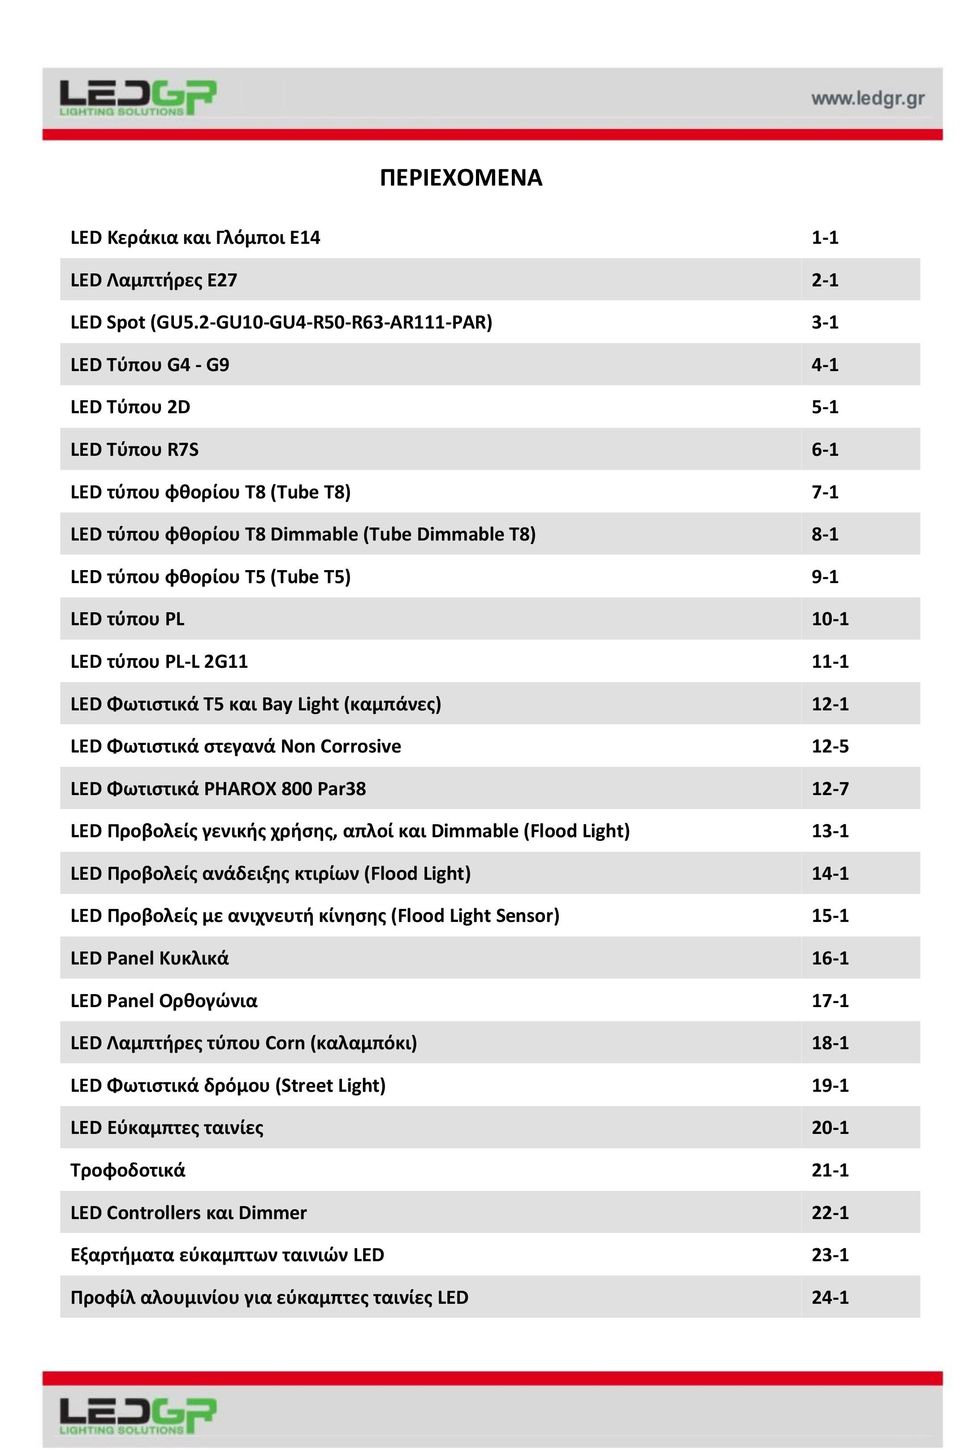 (Tube T5) 9-1 LED τύπου PL 10-1 LED τύπου PL-L 2G11 11-1 LED Φωτιστικά Τ5 και Bay Light (καμπάνες) 12-1 LED Φωτιστικά στεγανά Non Corrosive 12-5 LED Φωτιστικά PHAROX 800 Par38 12-7 LED Προβολείς